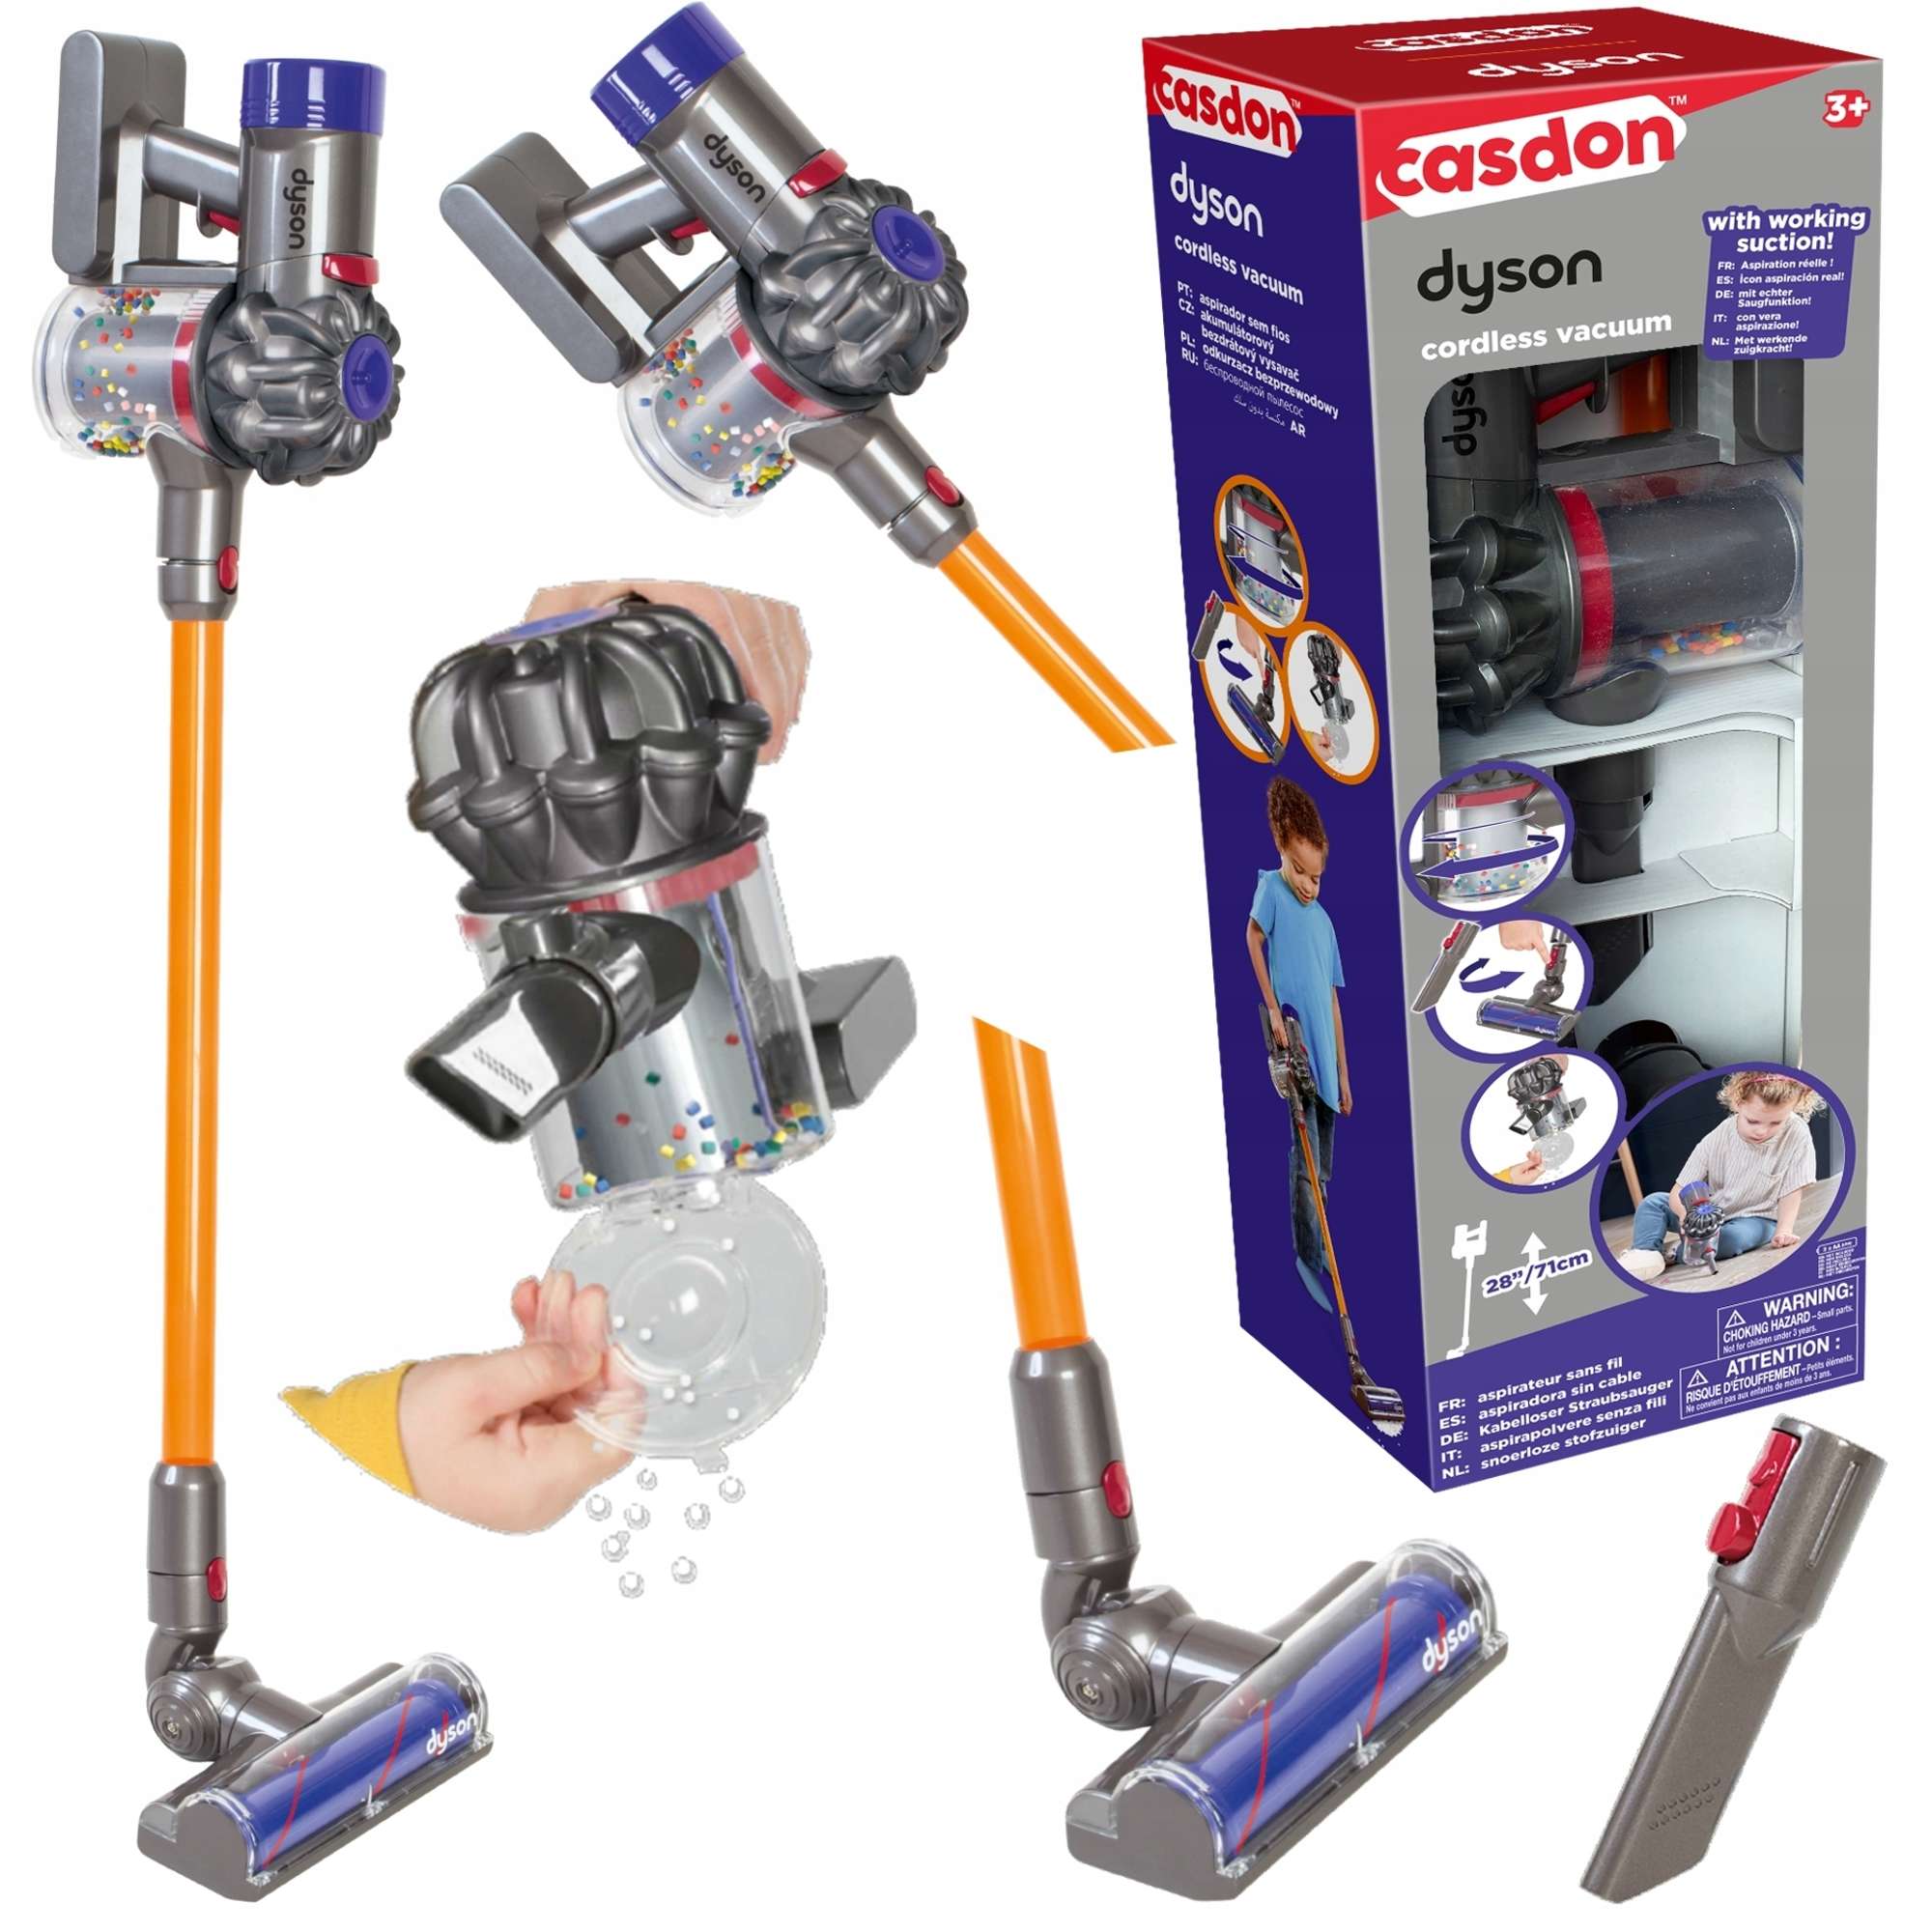 Spielzeug Upright Kinder Cordless Casdon Staubsaug Vakuum interaktive für Dyson